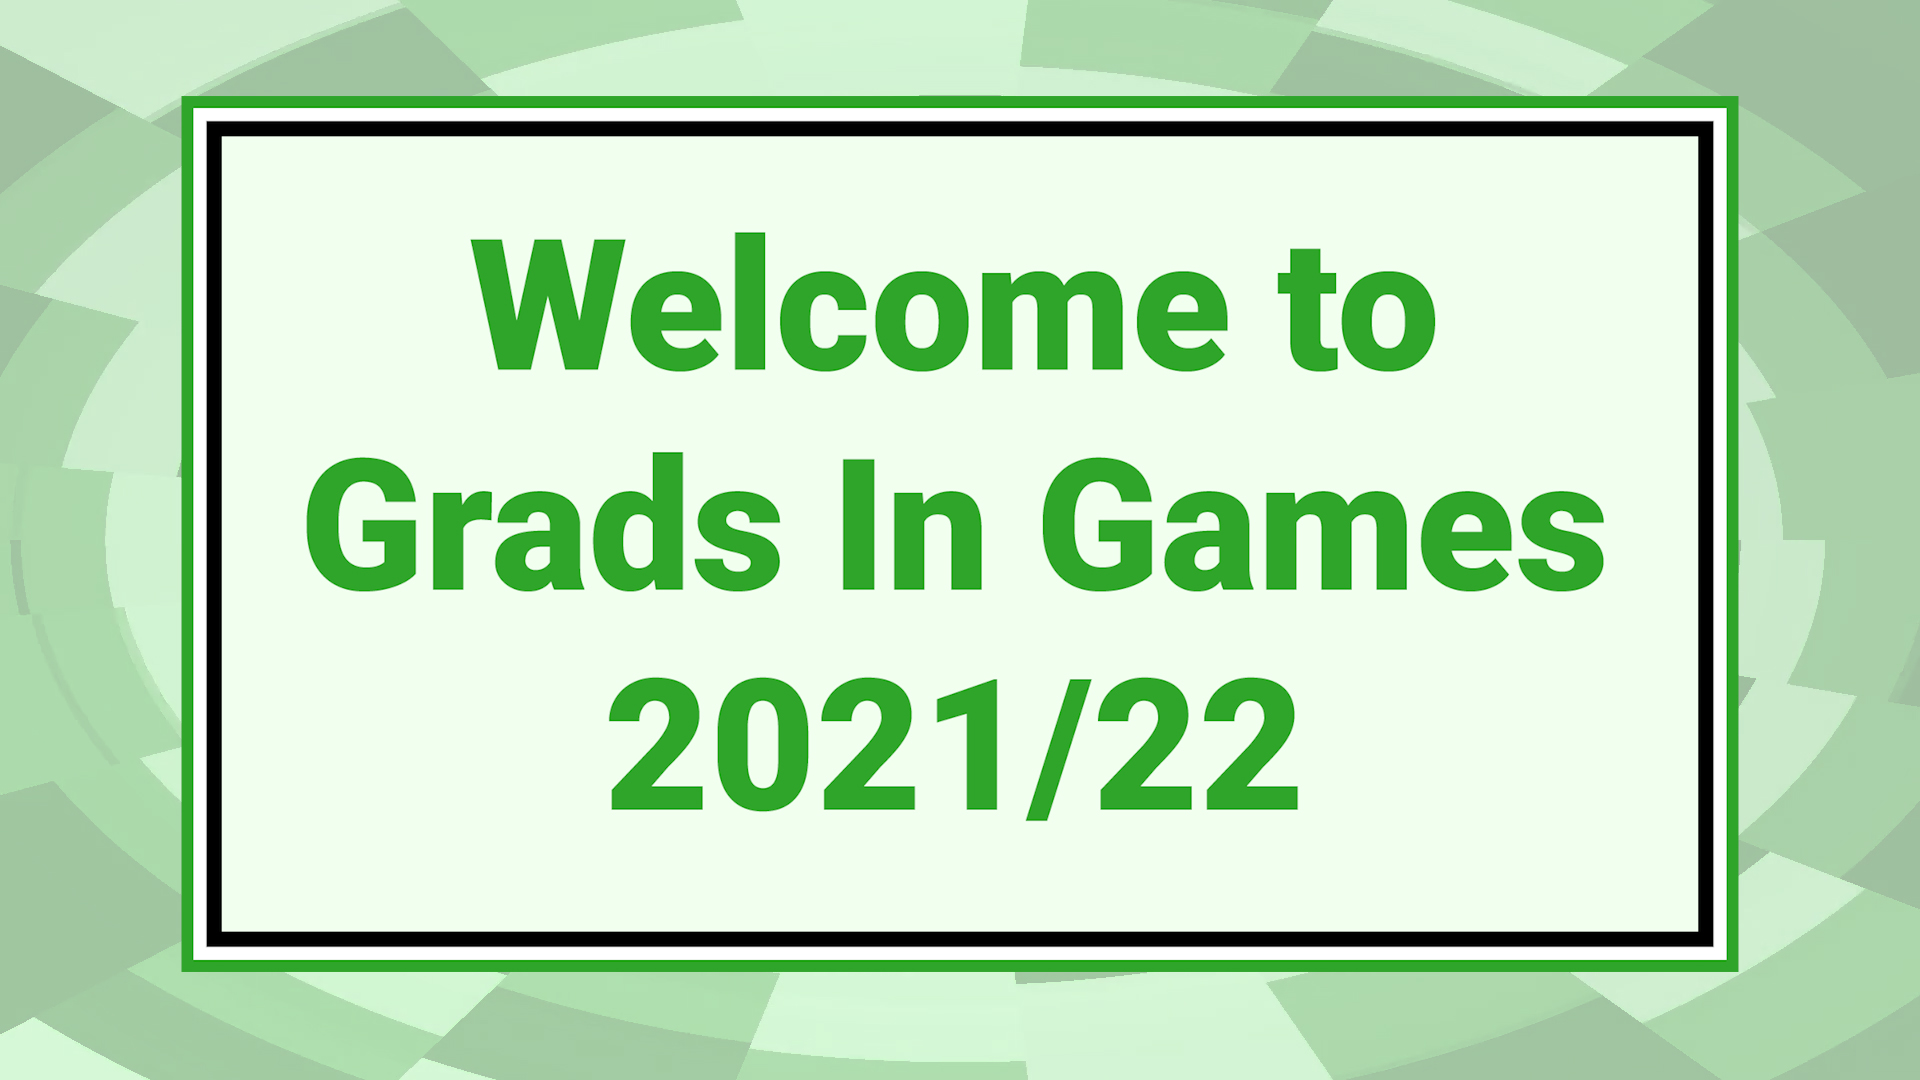 Grads In Games 2021/22